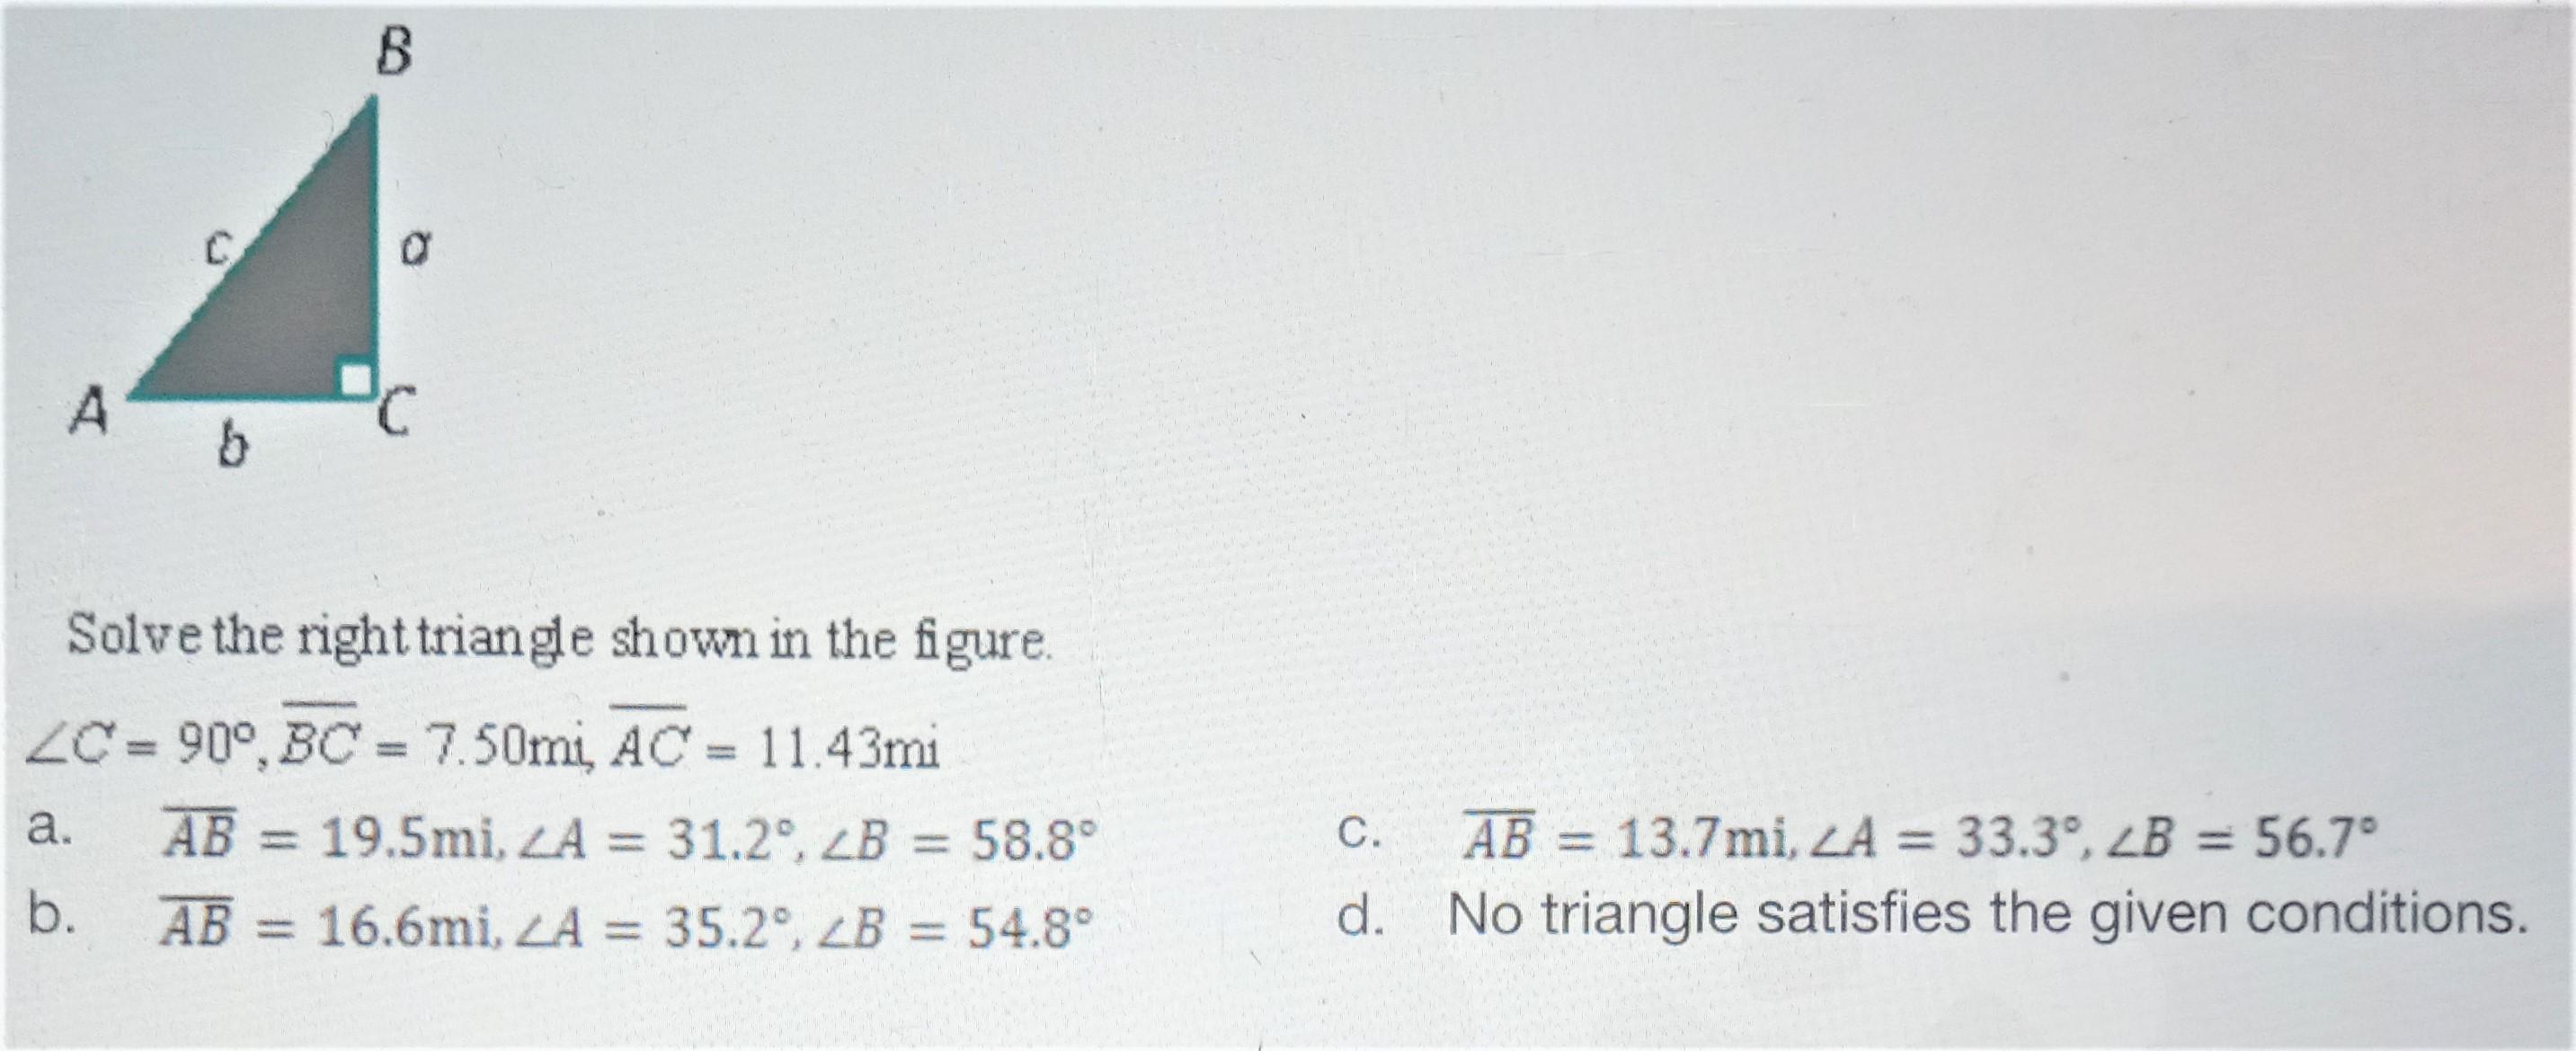 Right TrianglesSolve The Right Triangle Shown In The FigureC = 90, BC = 7.50mi, AC = 11.43mia. AB = 19.5mi,